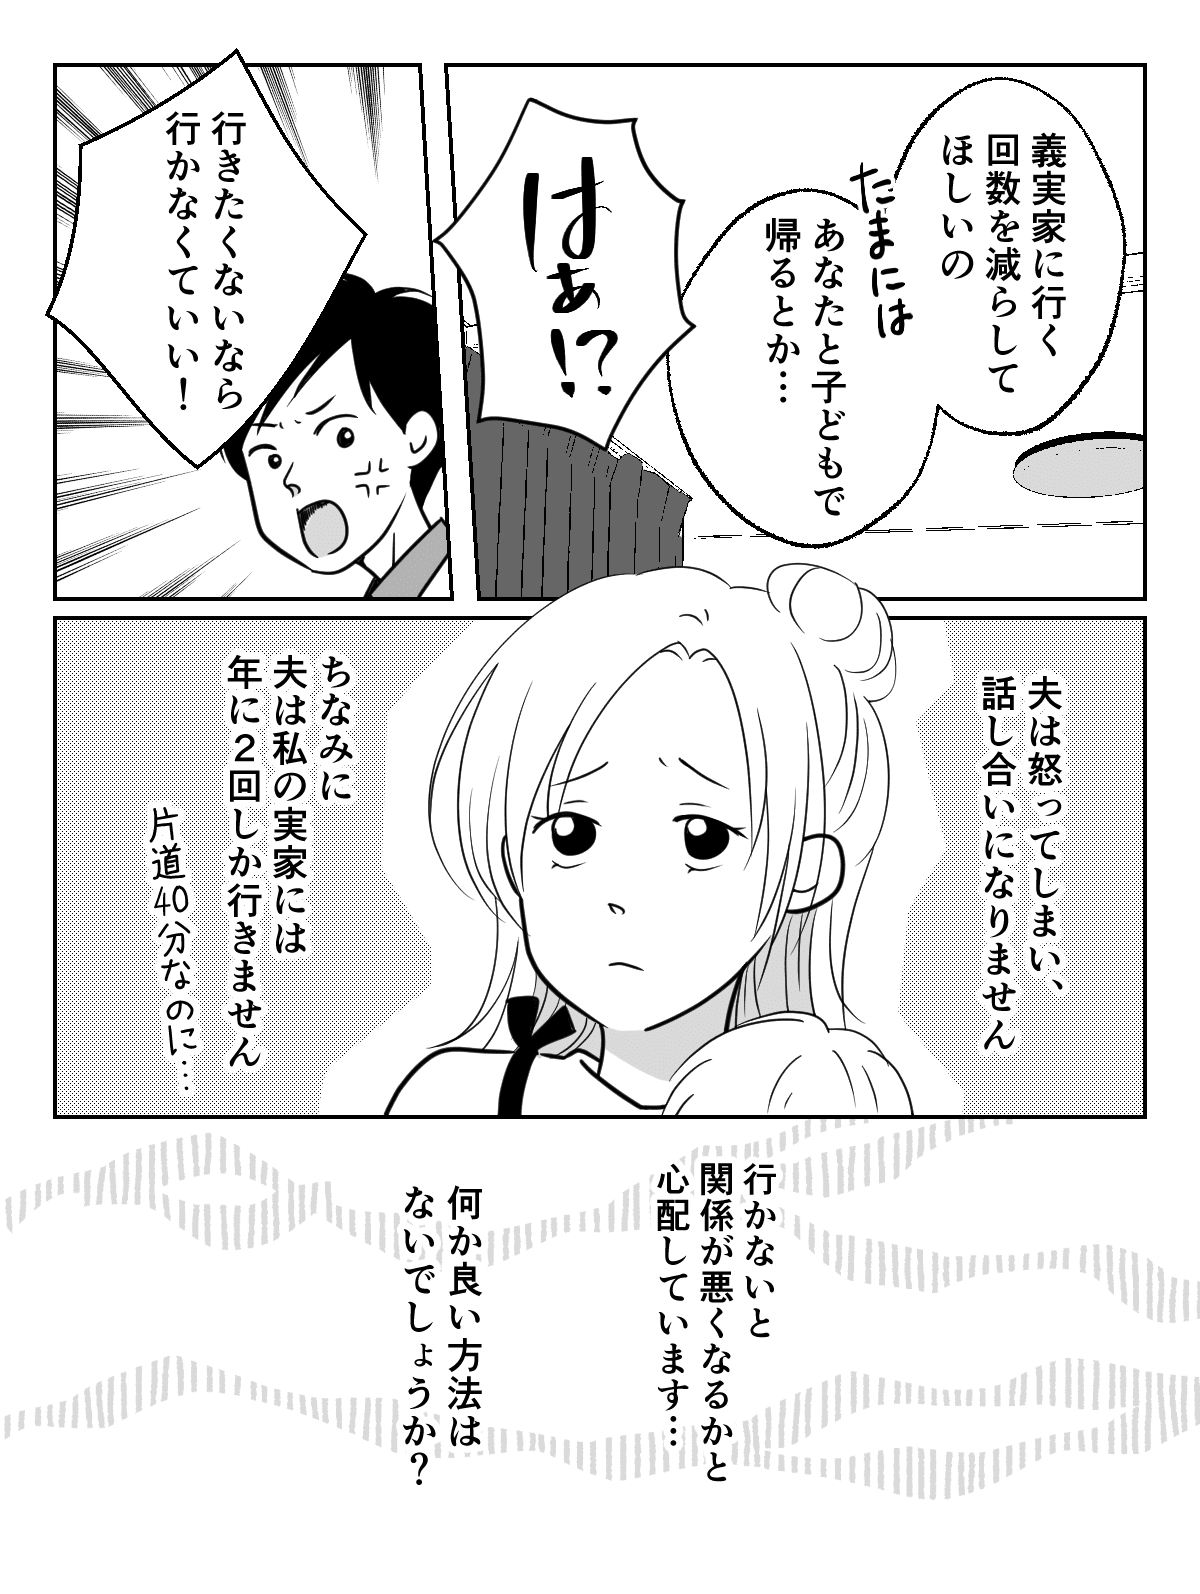 コミック_004